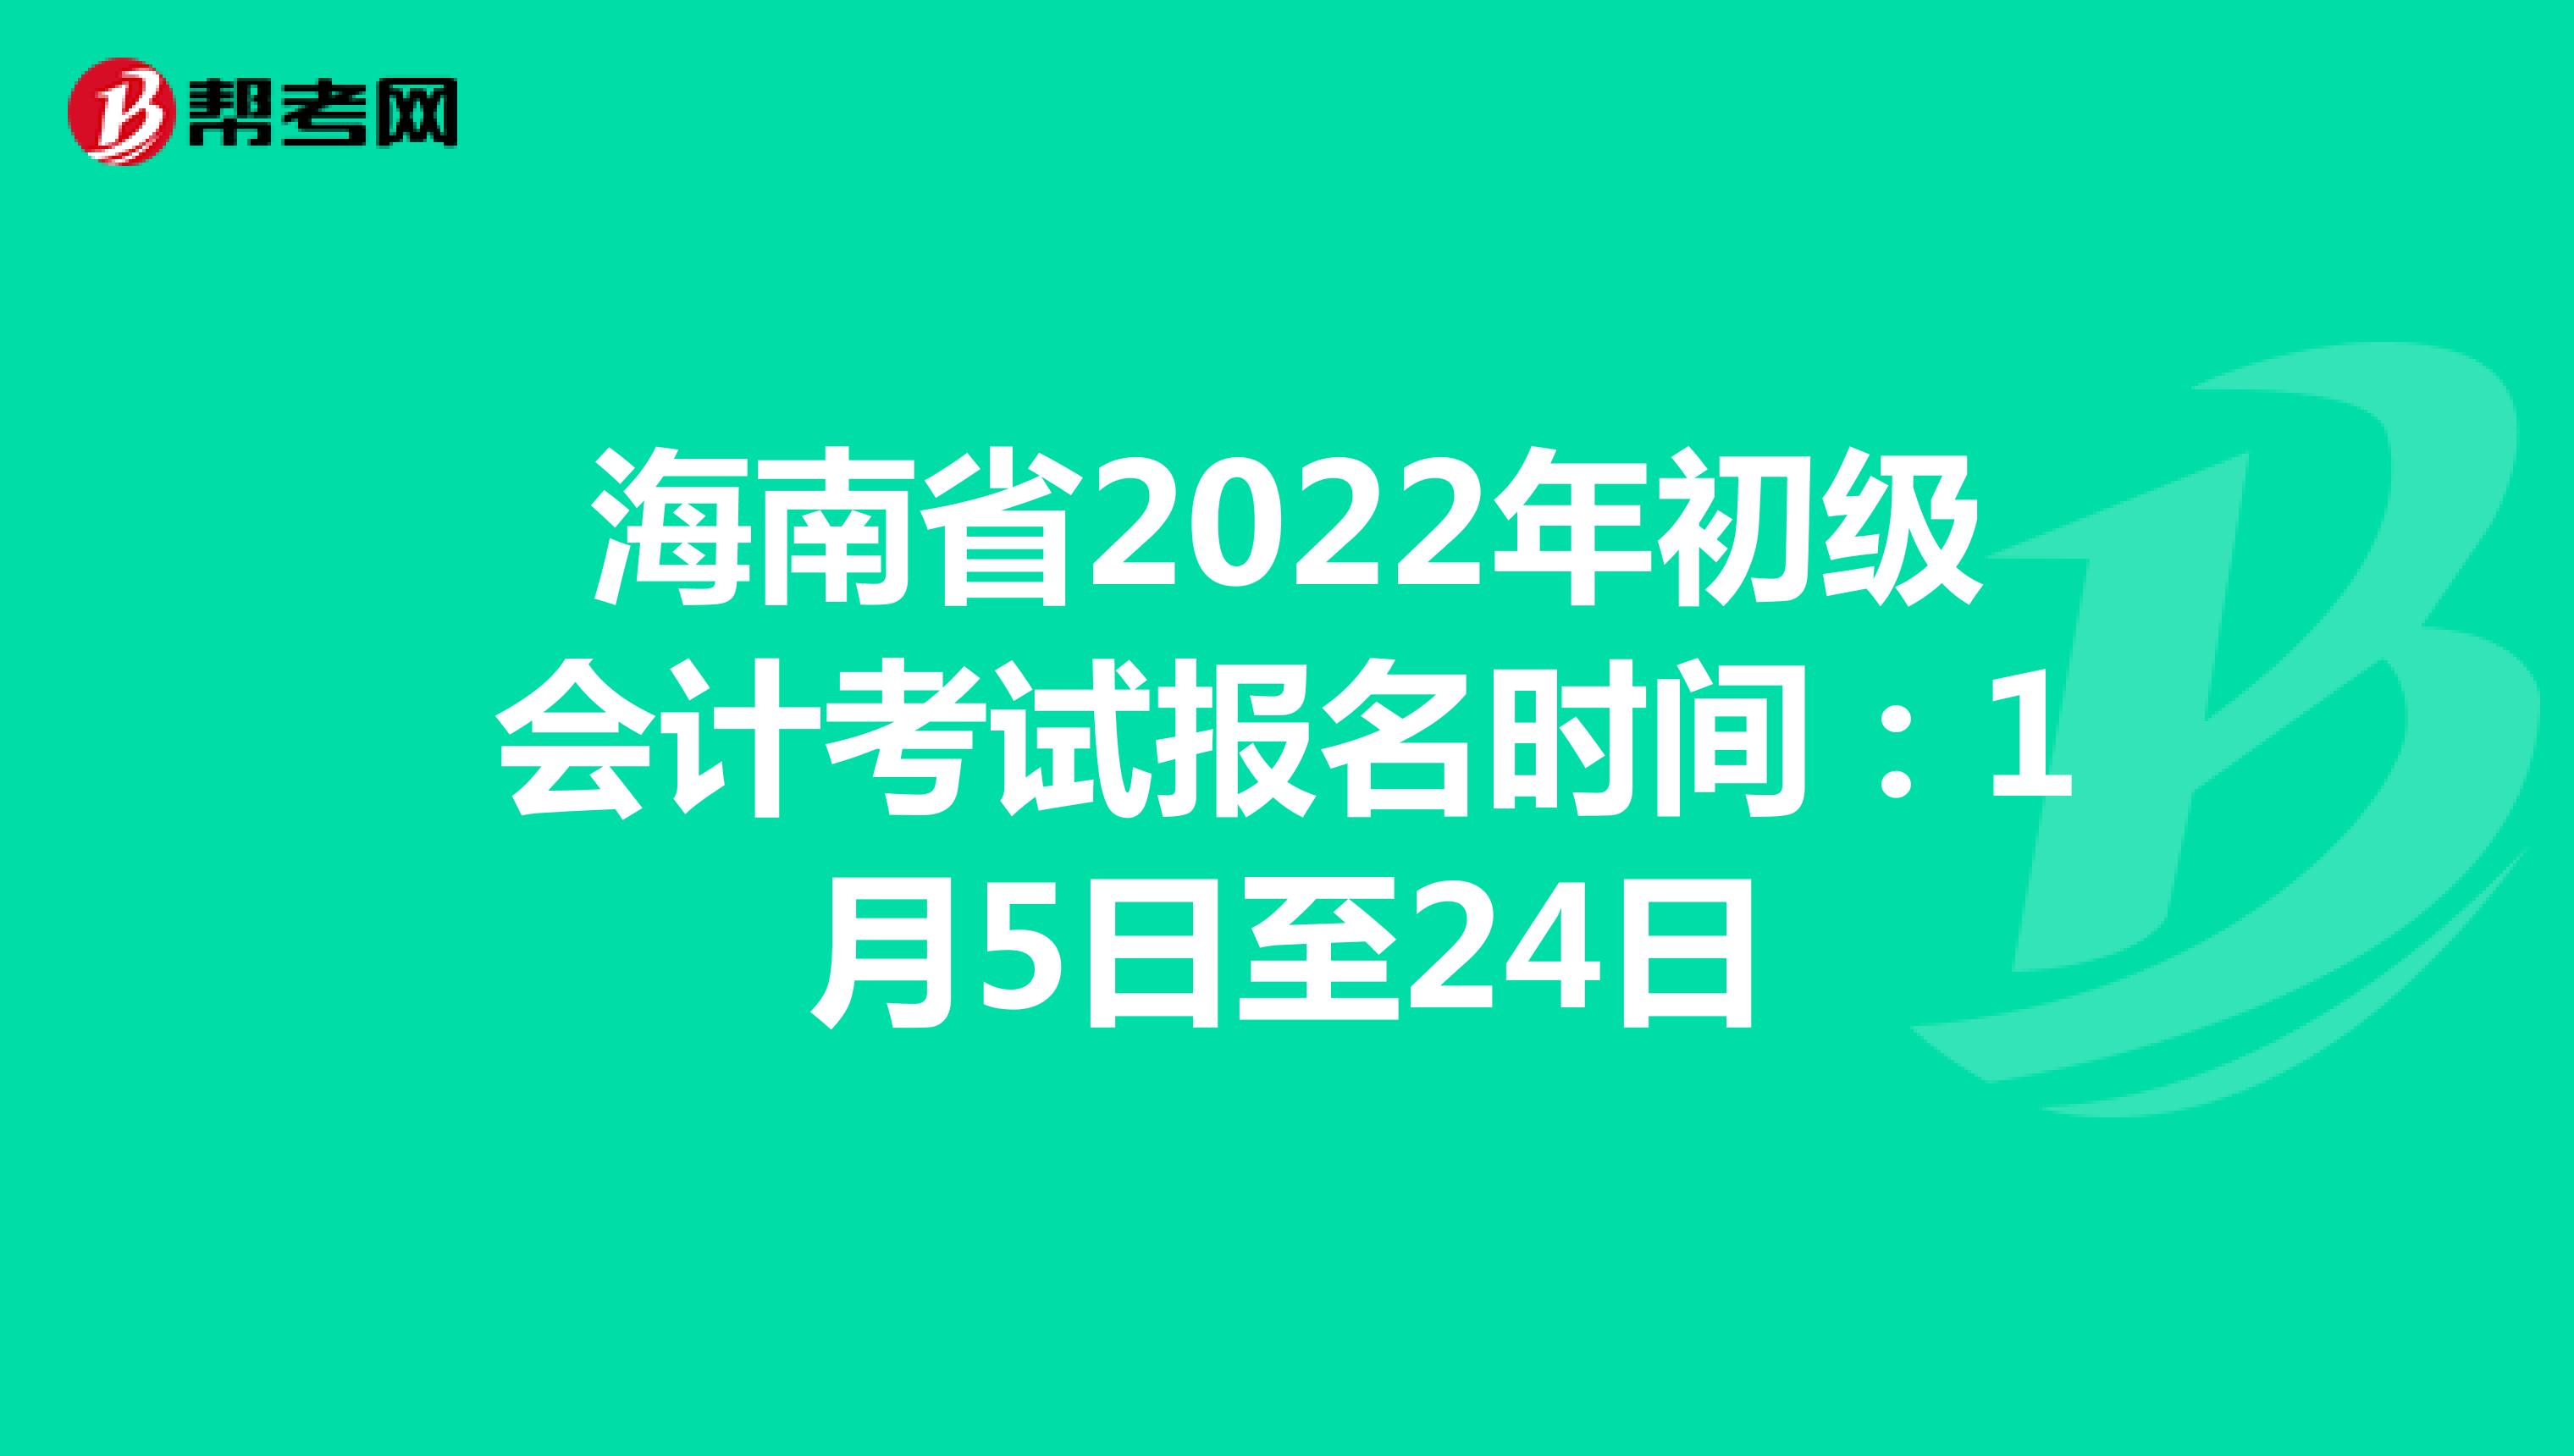 海南省2022年初级会计考试报名时间：1月5日至24日